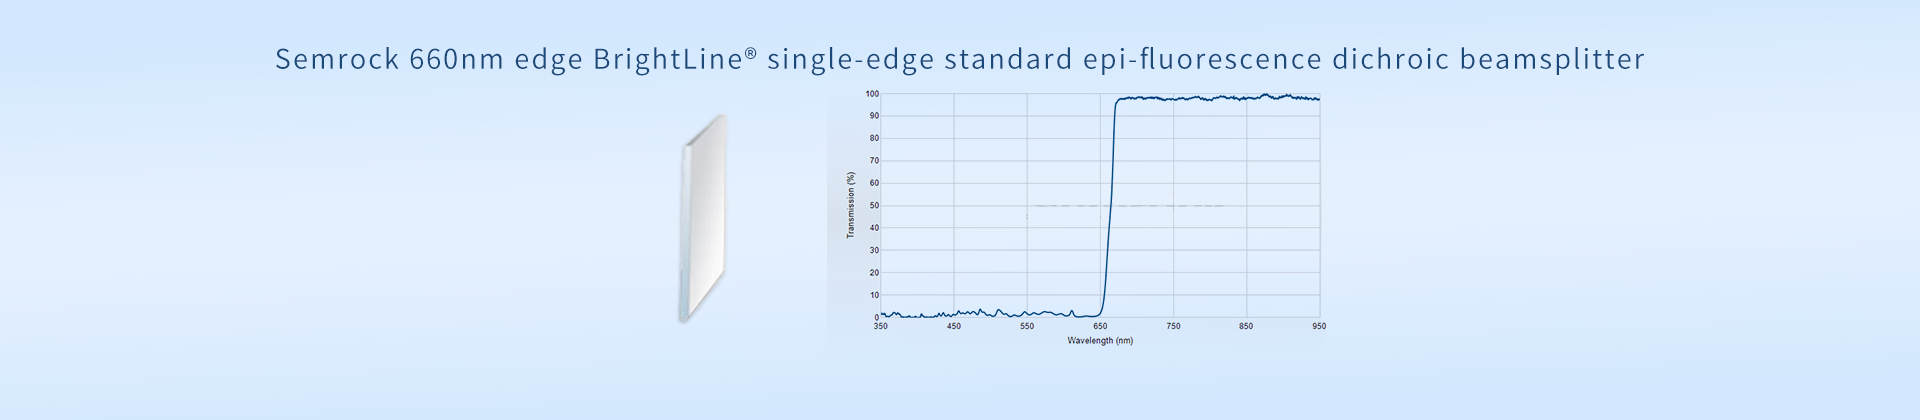 Semrock 660nm edge BrightLine® single-edge standard epi-fluorescence dichroic beamsplitter